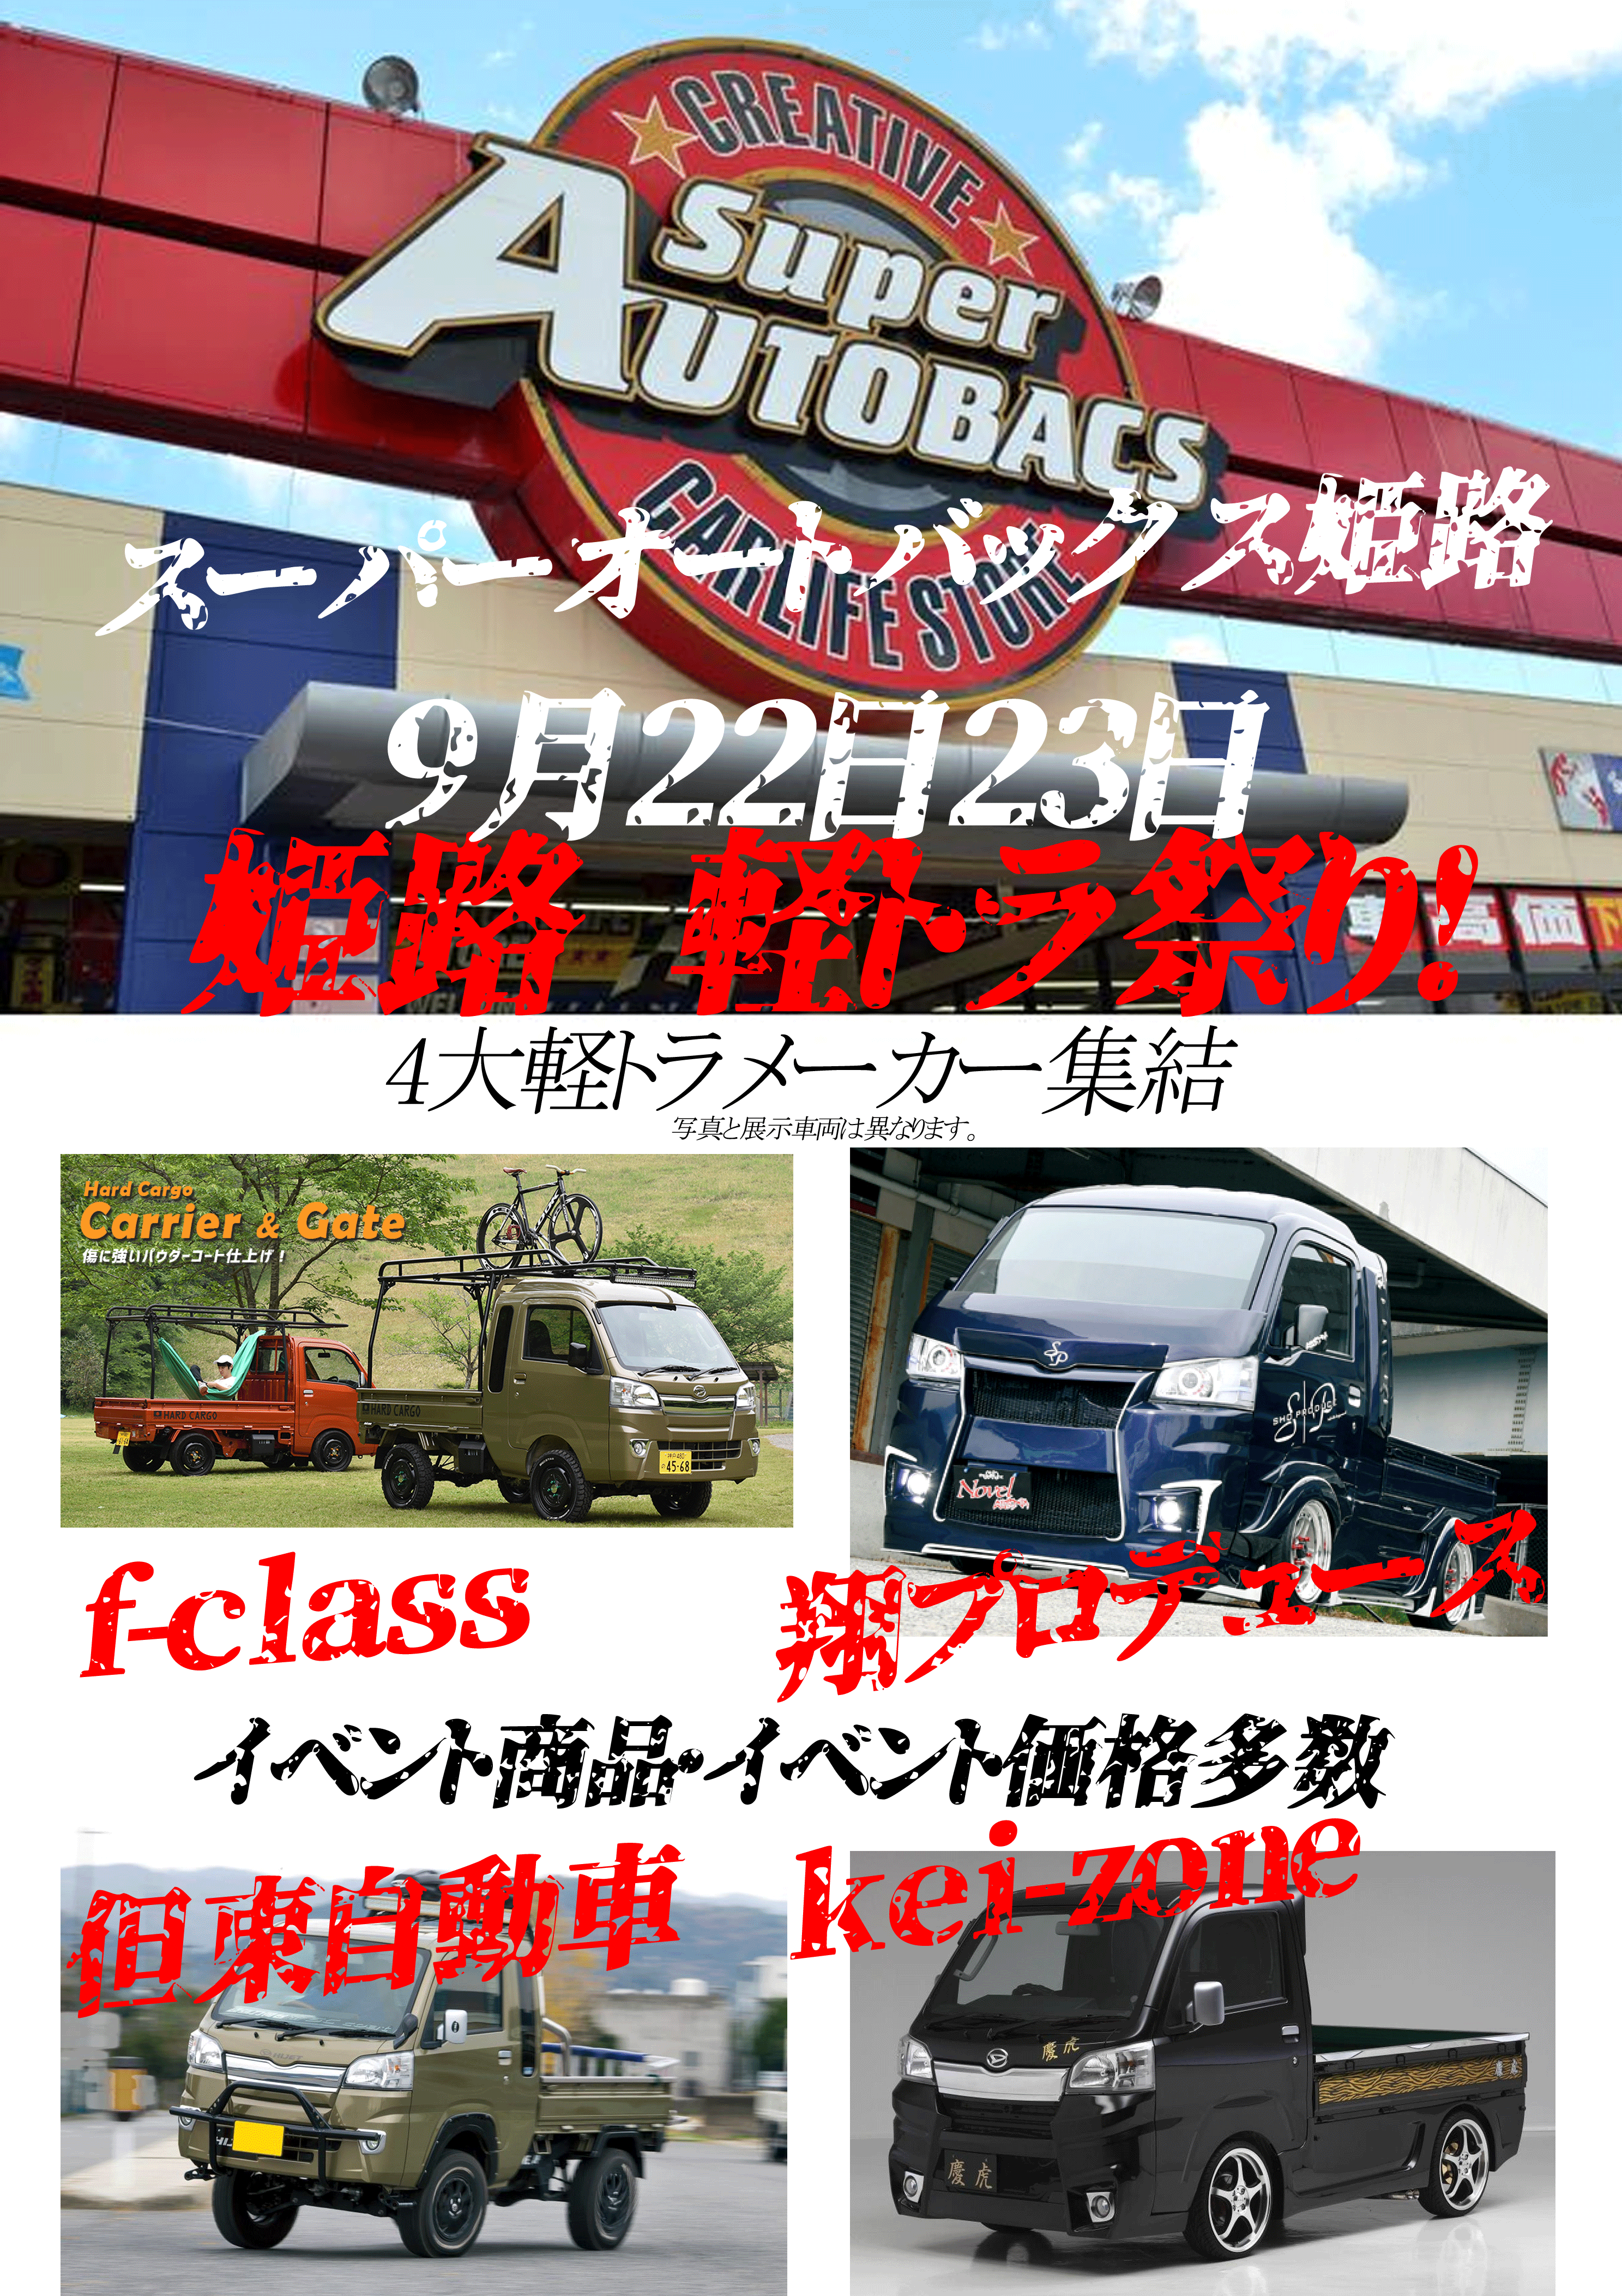 Sabイベント 軽トラカスタム オリジナルエアロパーツ カスタムカー販売 翔プロデュース